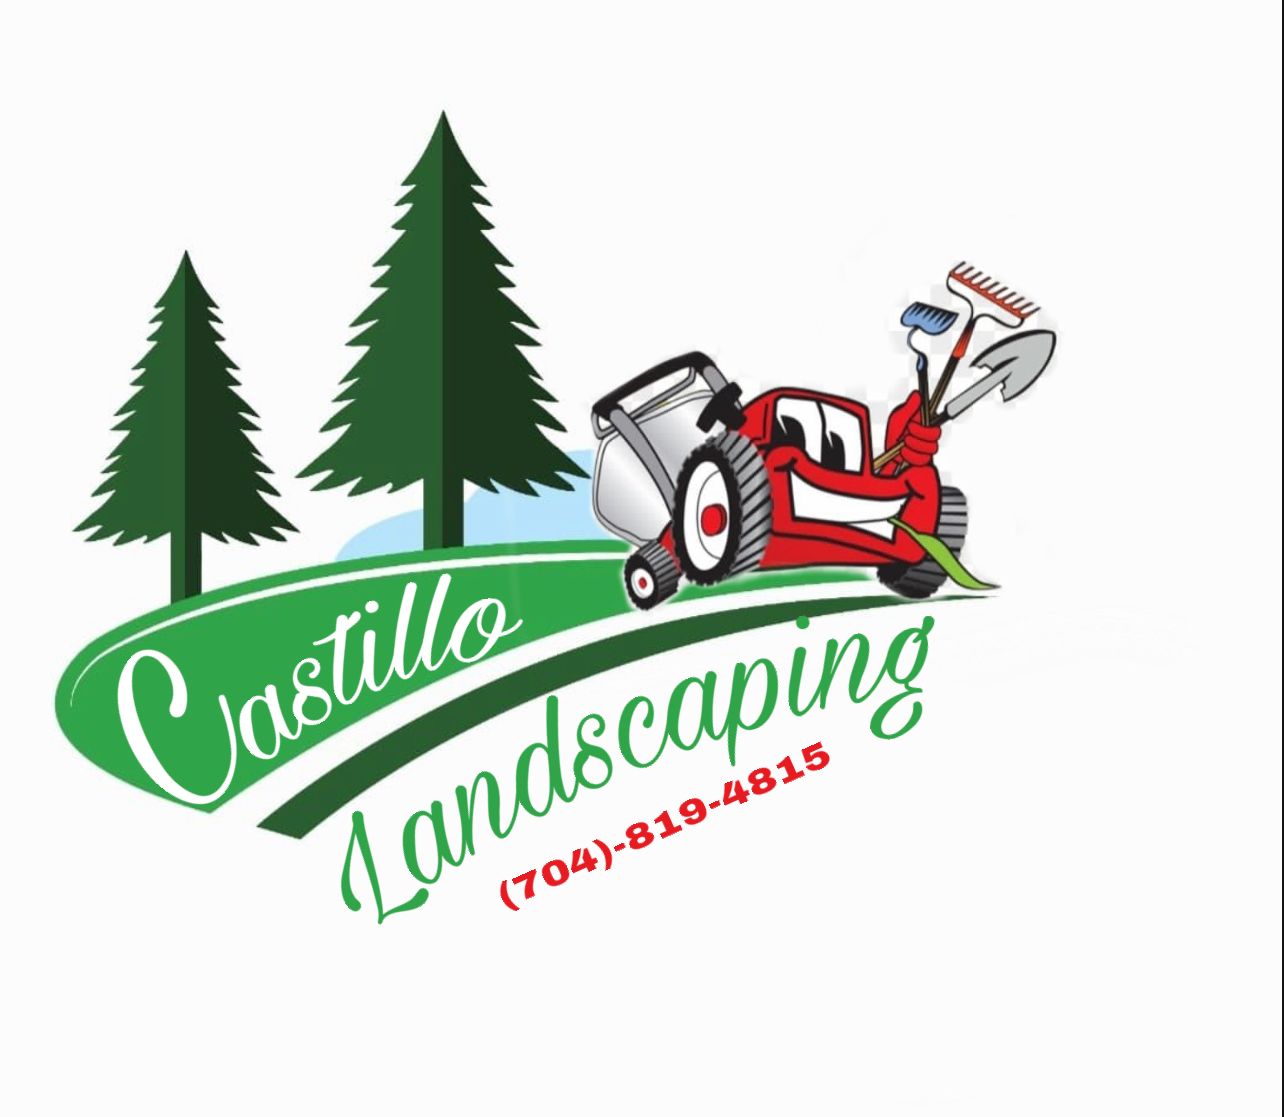 Castillo Landscaping Logo